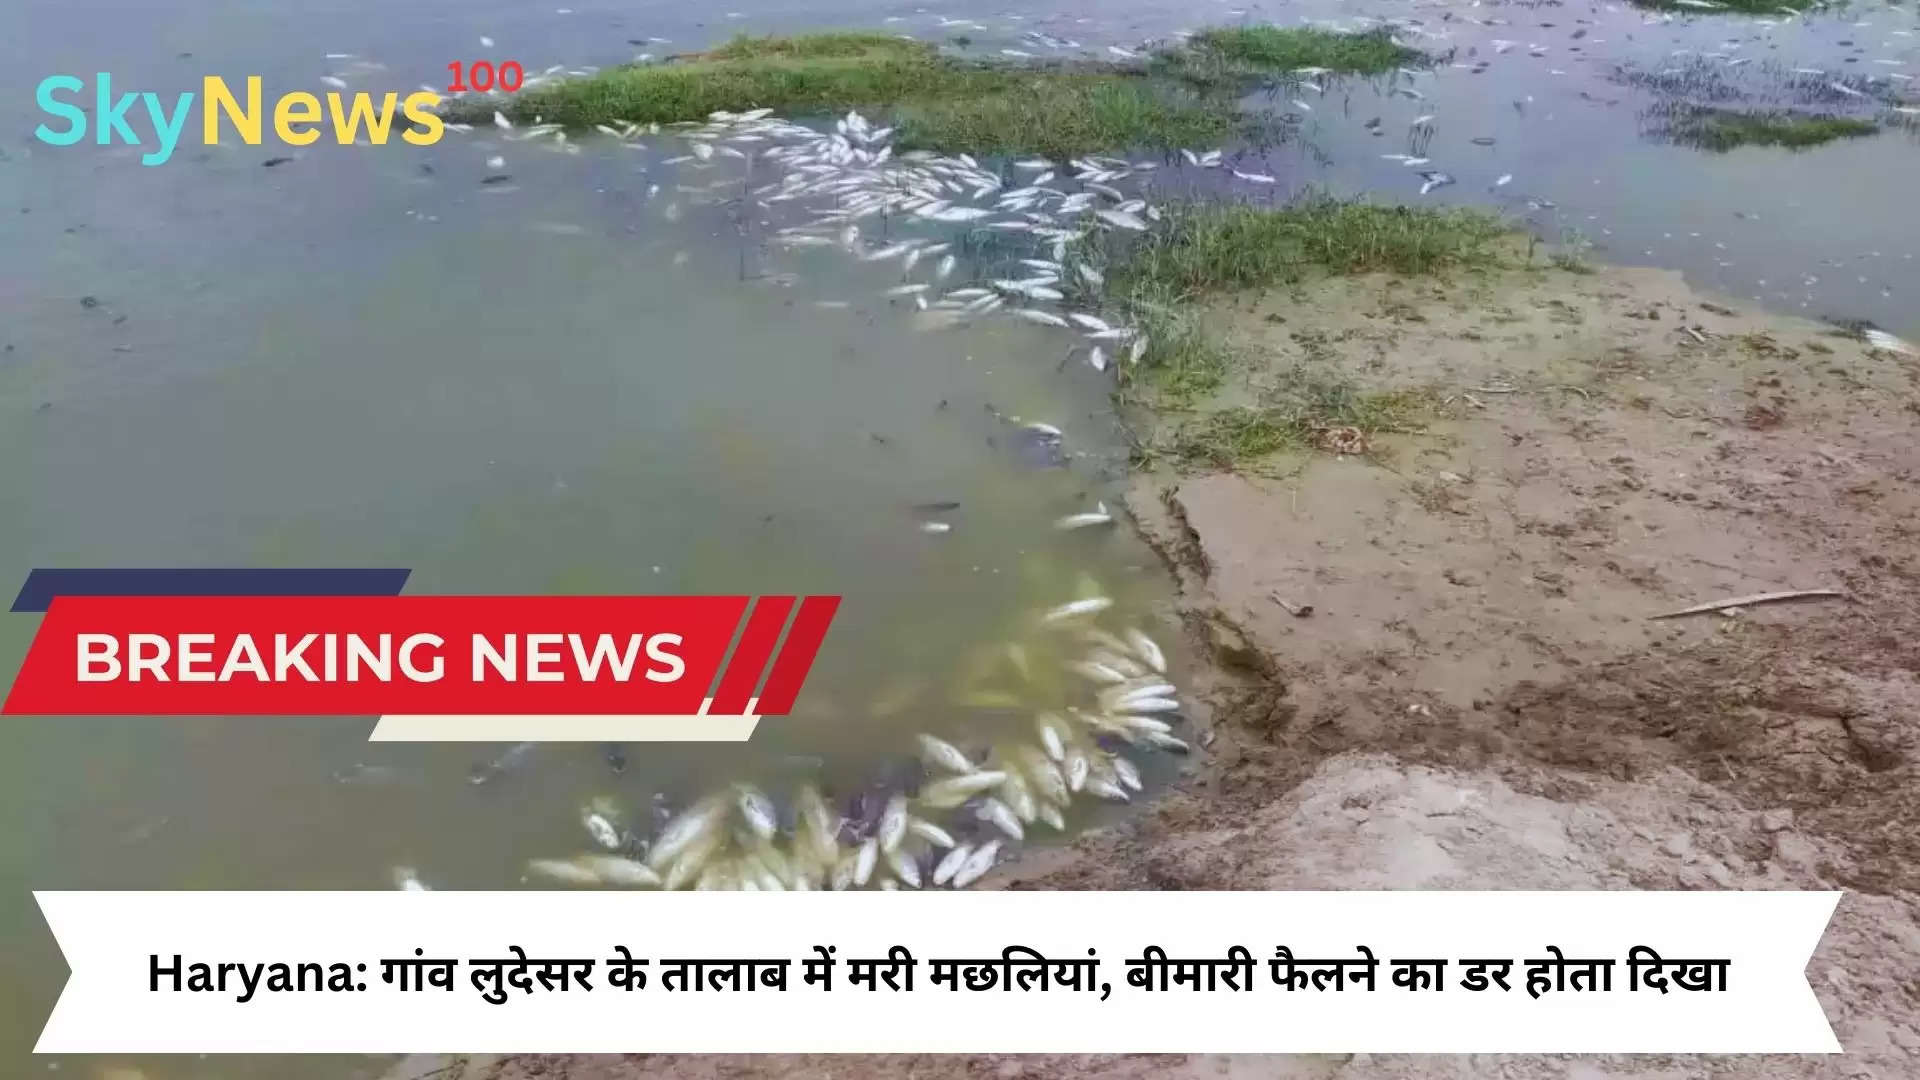 Haryana: गांव लुदेसर के तालाब में मरी मछलियां, बीमारी फैलने का डर होता दिखा